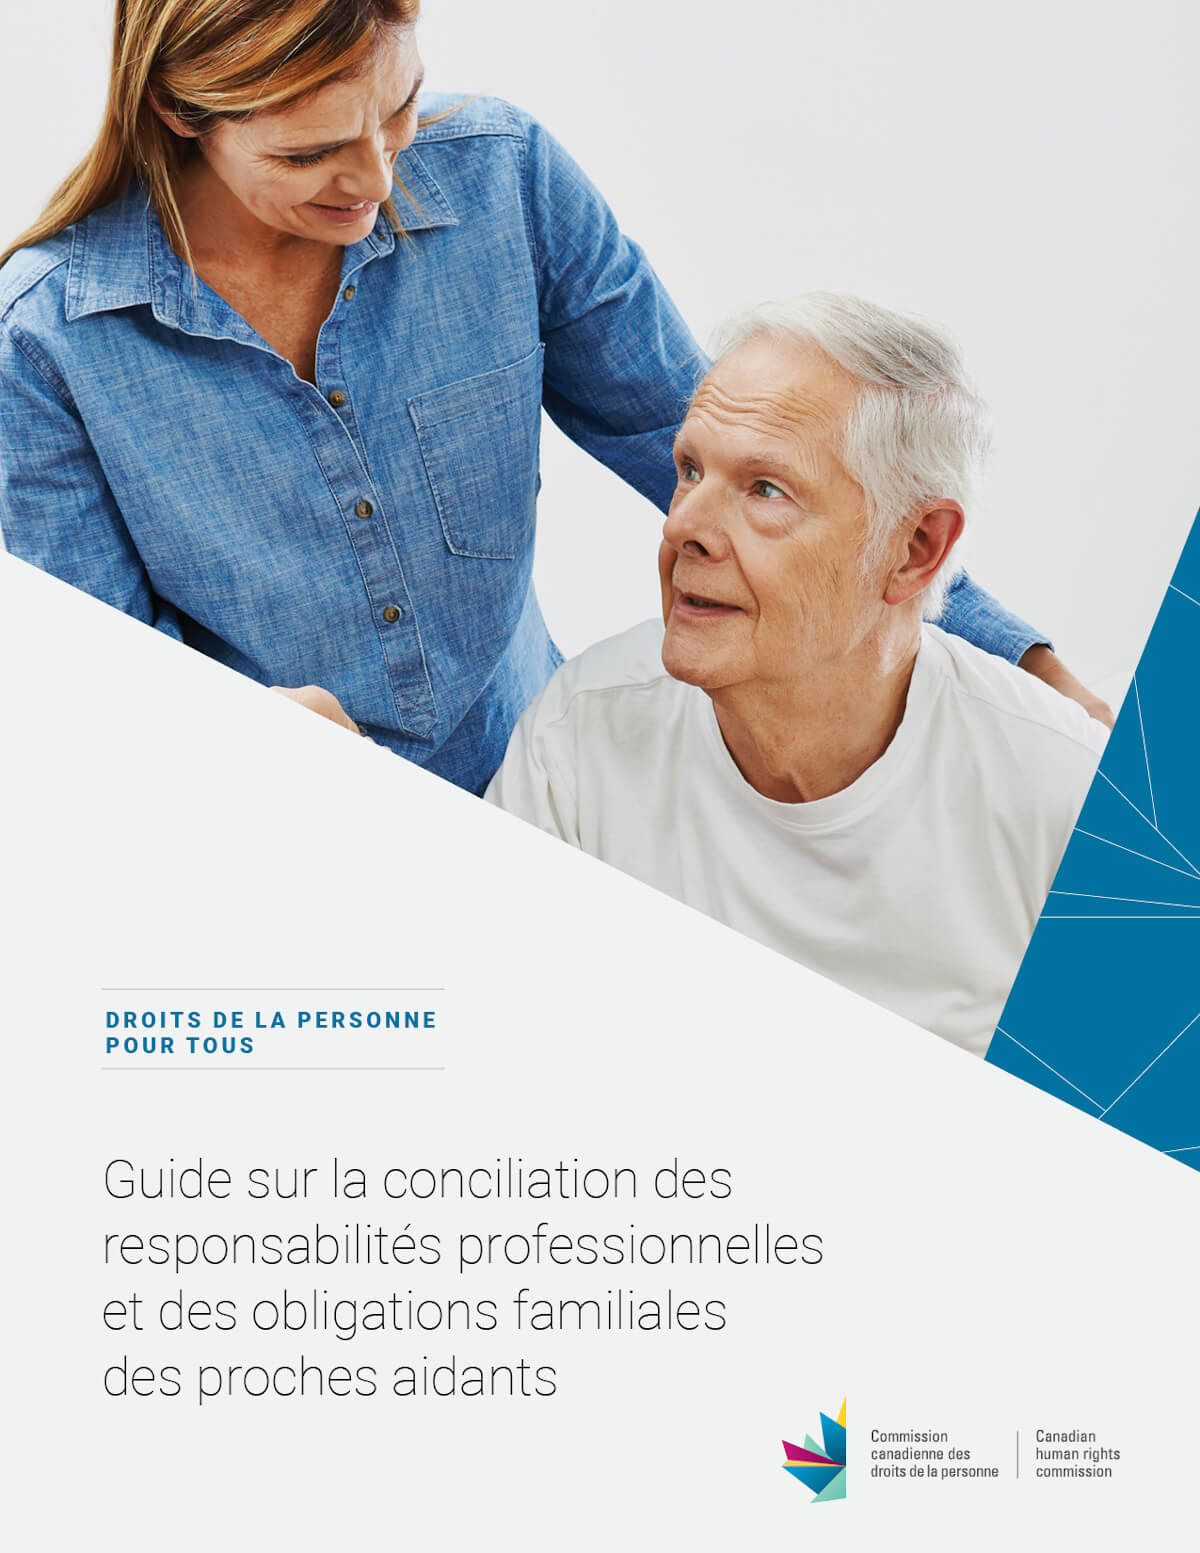 Guide sur la conciliation des responsabilités professionnelles et des obligations familiales des proches aidants